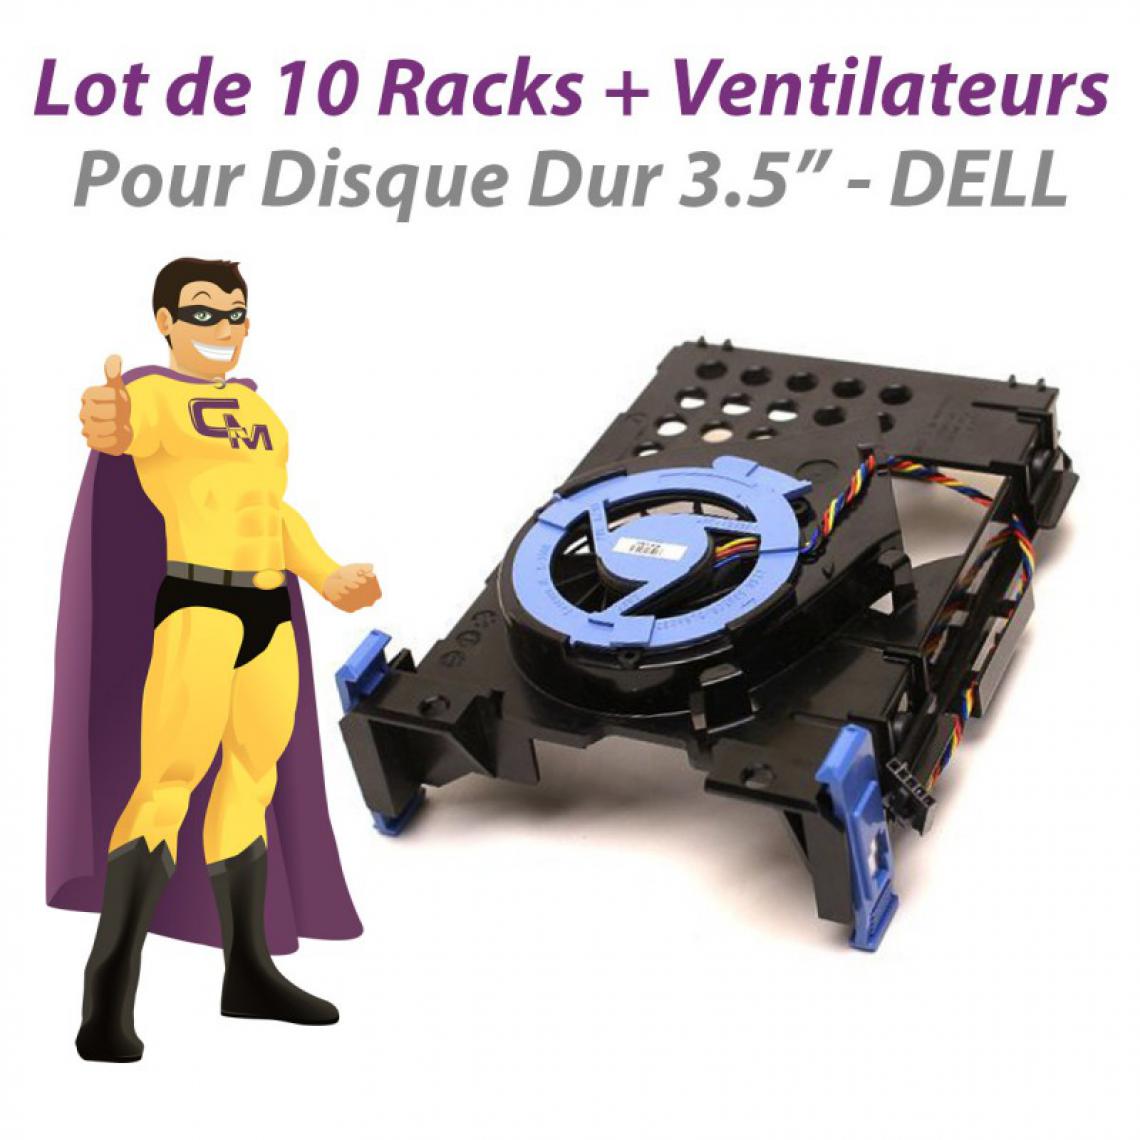 Dell - Lot x10 Racks Ventilateurs Dell XPS 210 0TJ160 0NH645 0NJ793 0CM740 0NY290 - Ventilateur Pour Boîtier